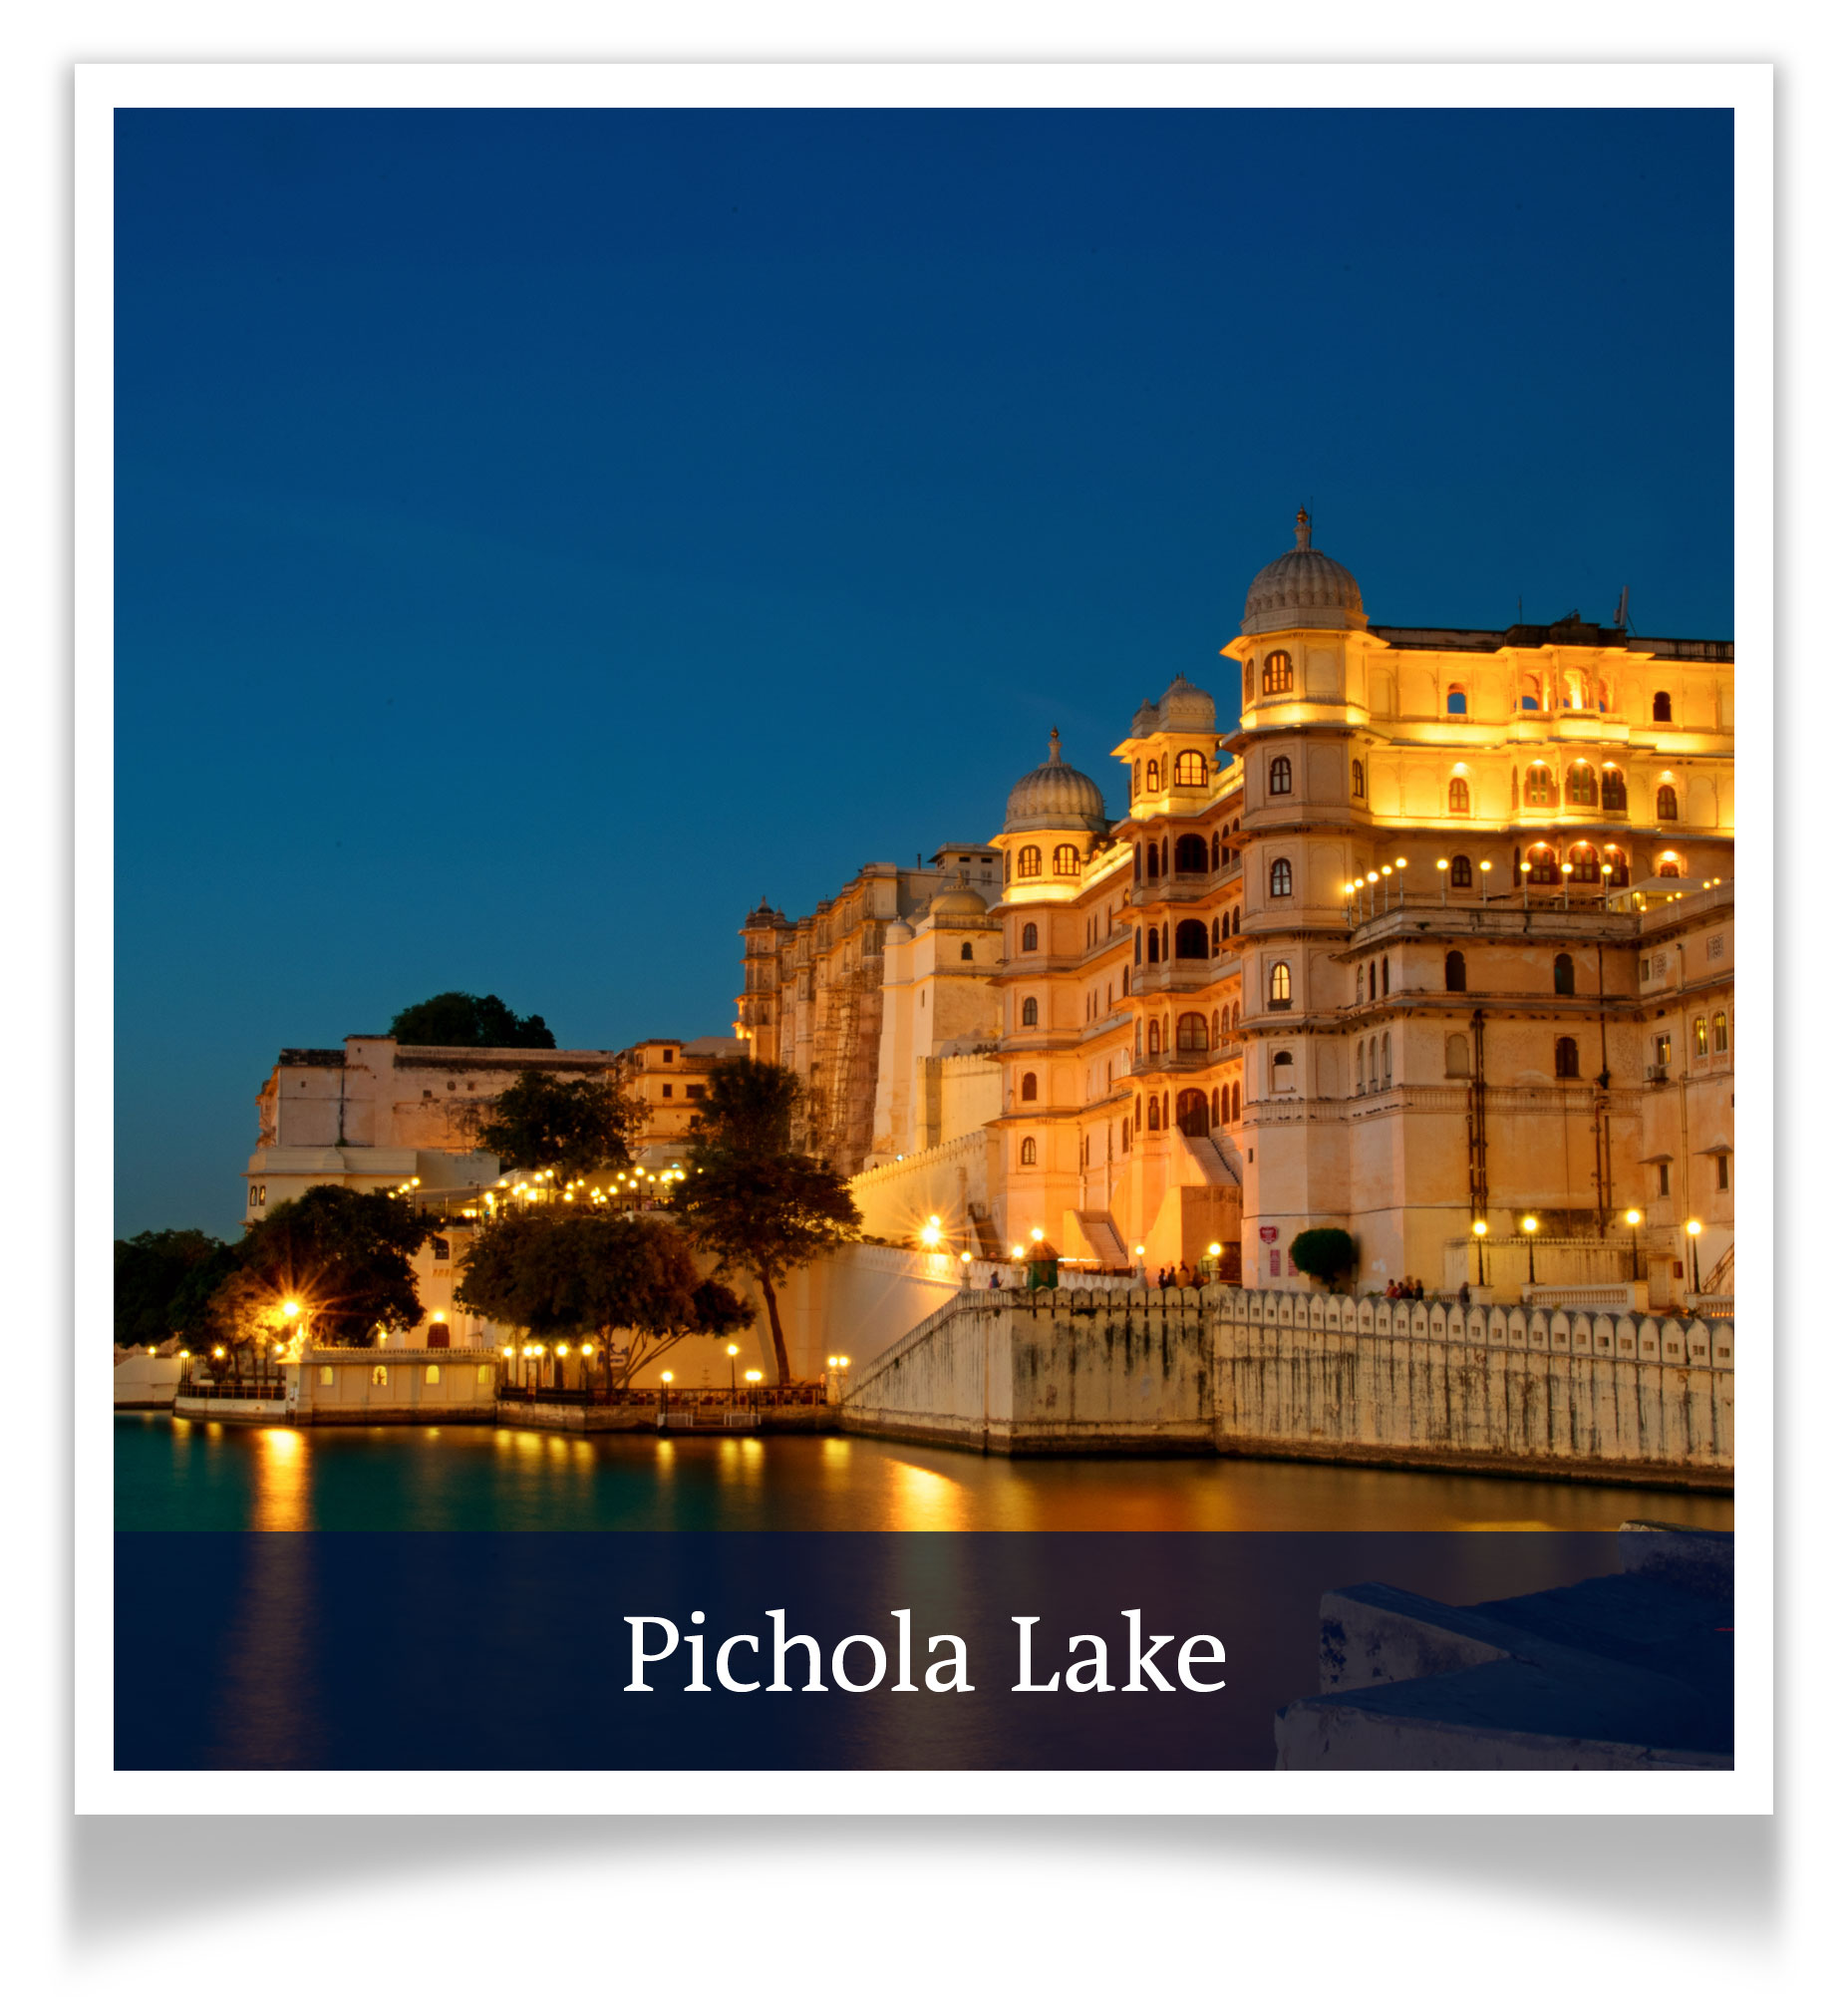 Pichola Lake